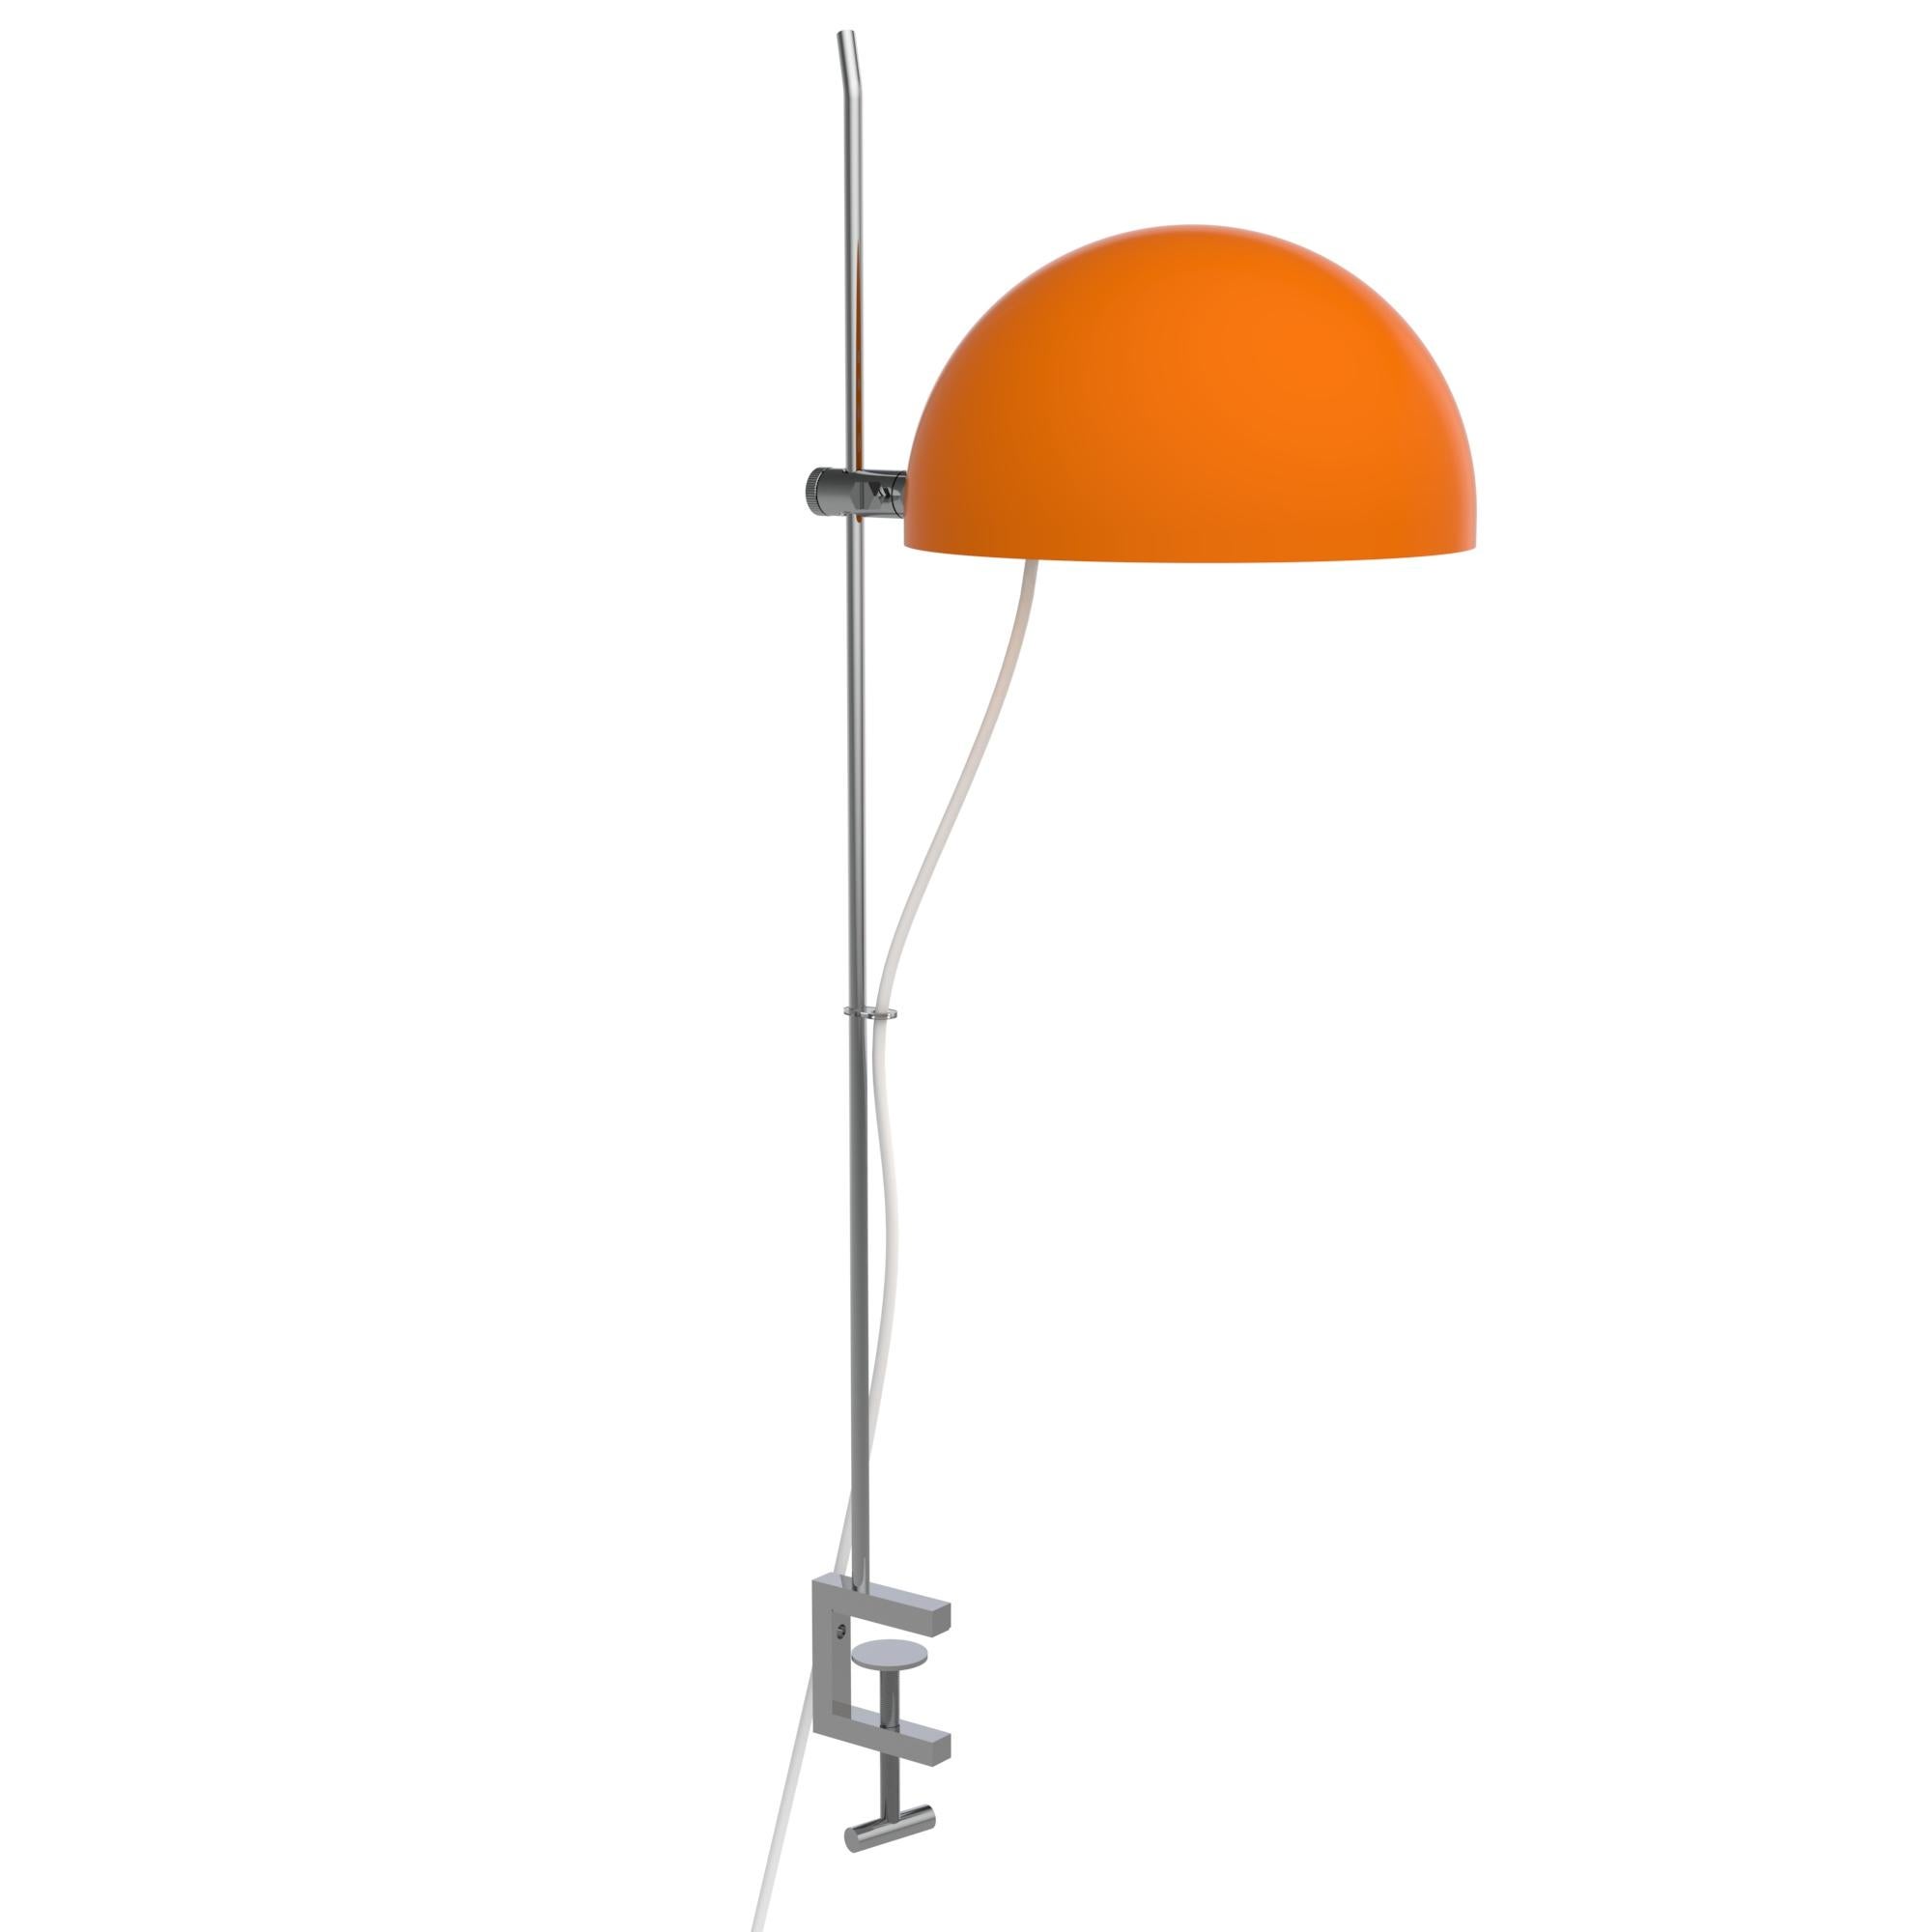 French Alain Richard 'A22f' Task Lamp in Orange for Disderot For Sale